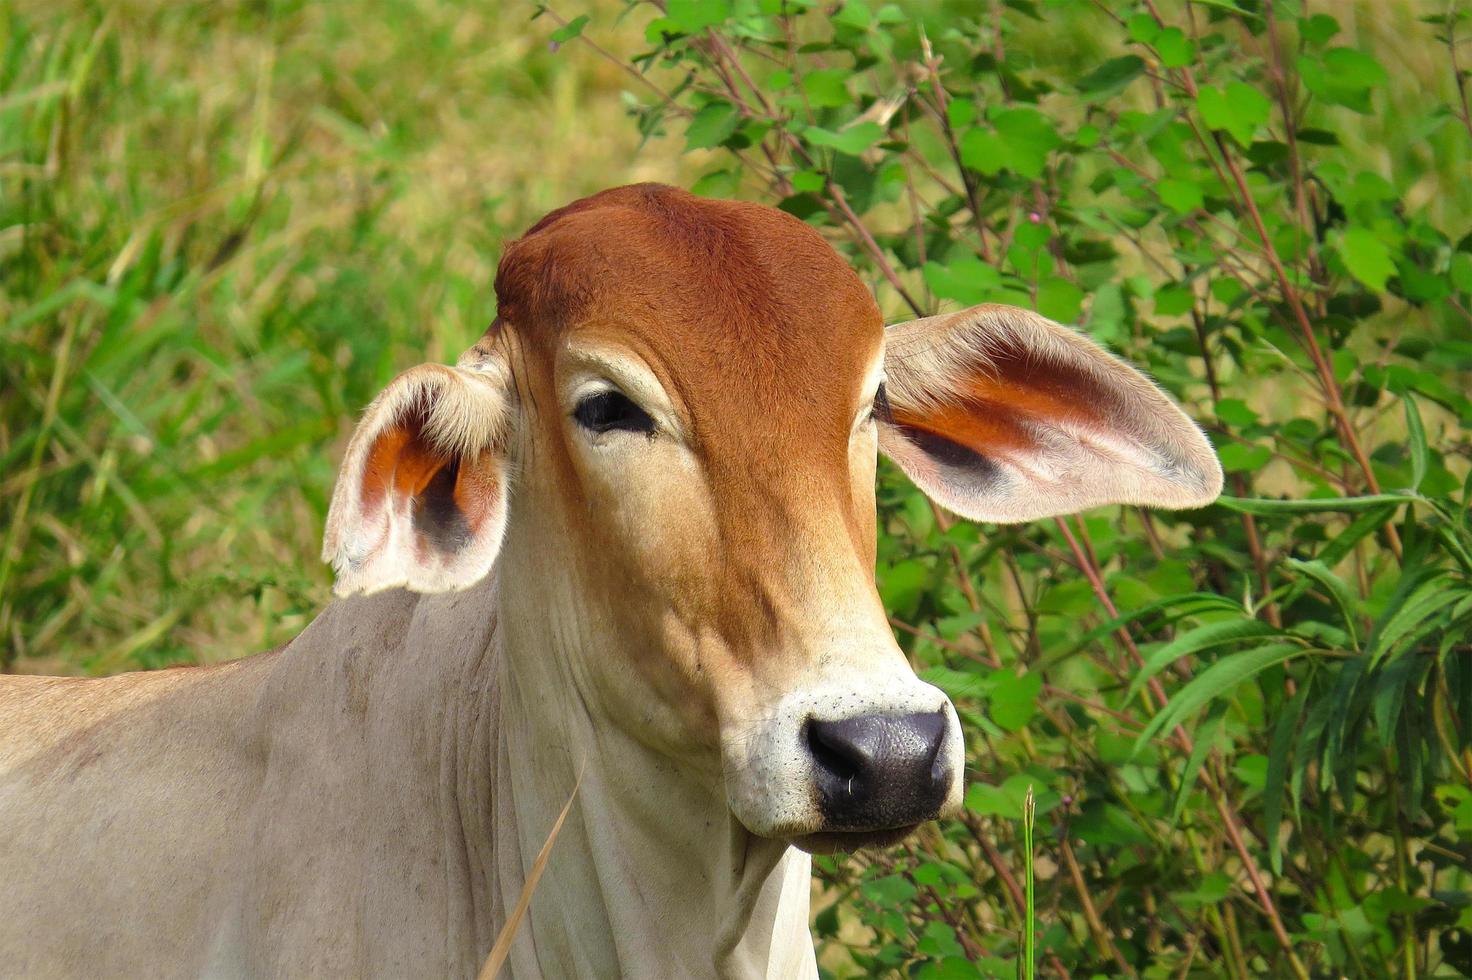 Nahaufnahme von Ochsen, die auf der grünen Wiese im landwirtschaftlichen Bereich grasen. landwirtschaftliche Produktion von Rindern foto